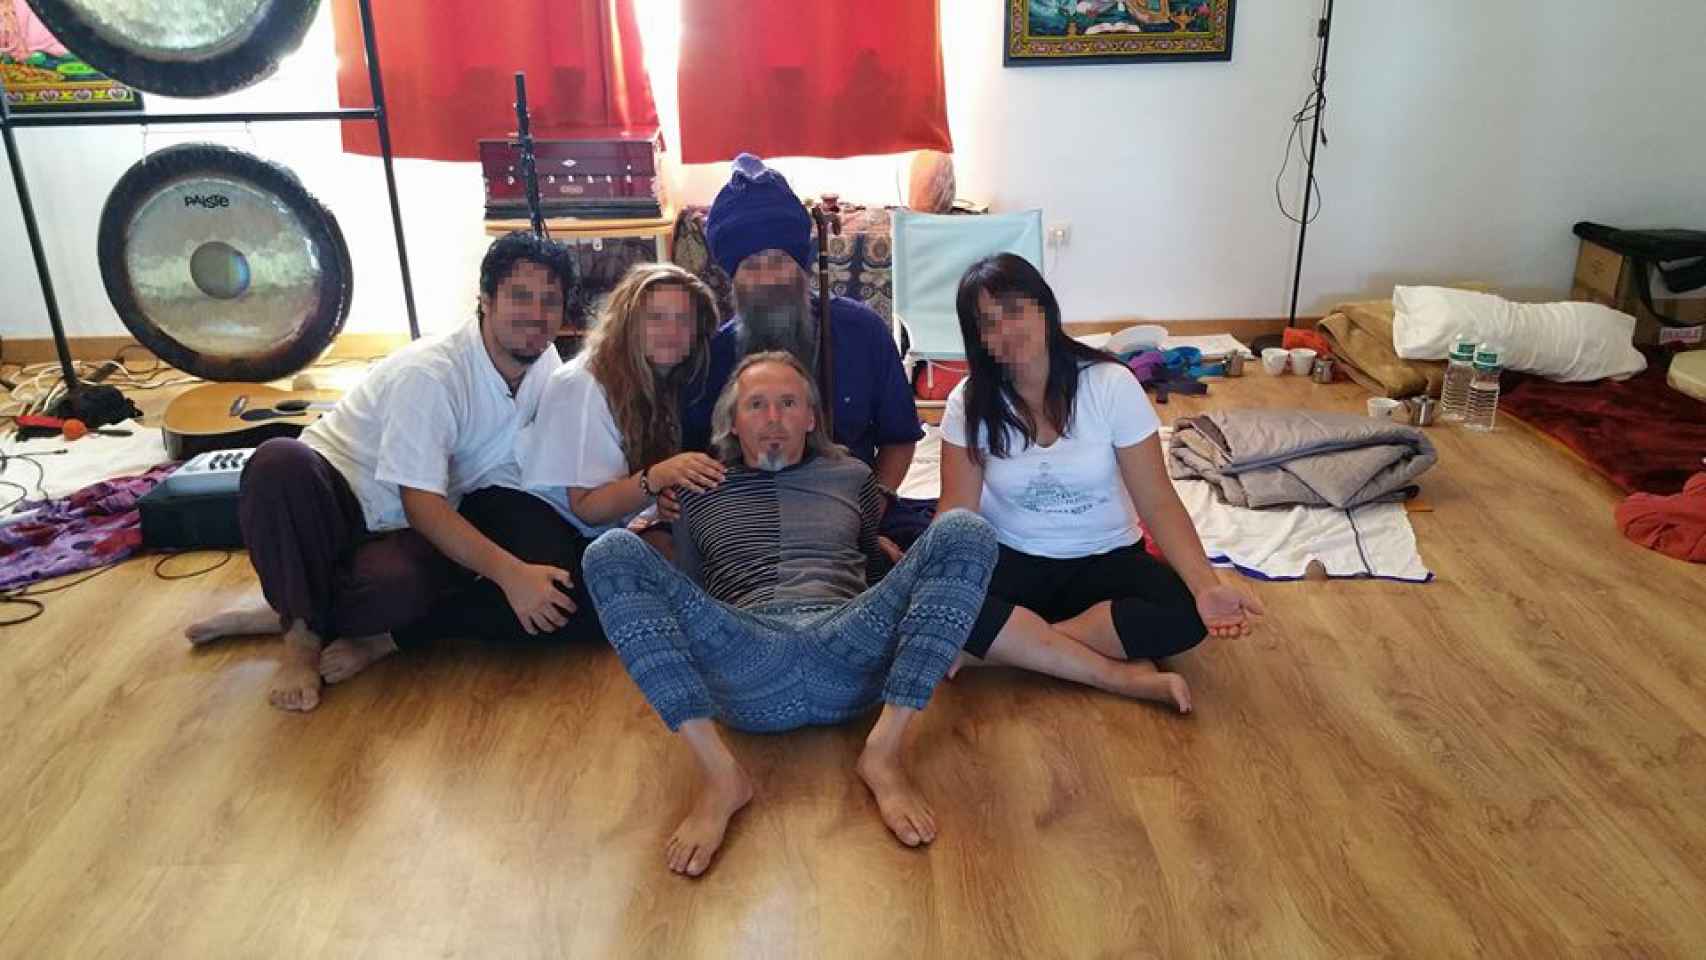 Antonio Acha, en el centro de la imagen con las piernas abiertas.